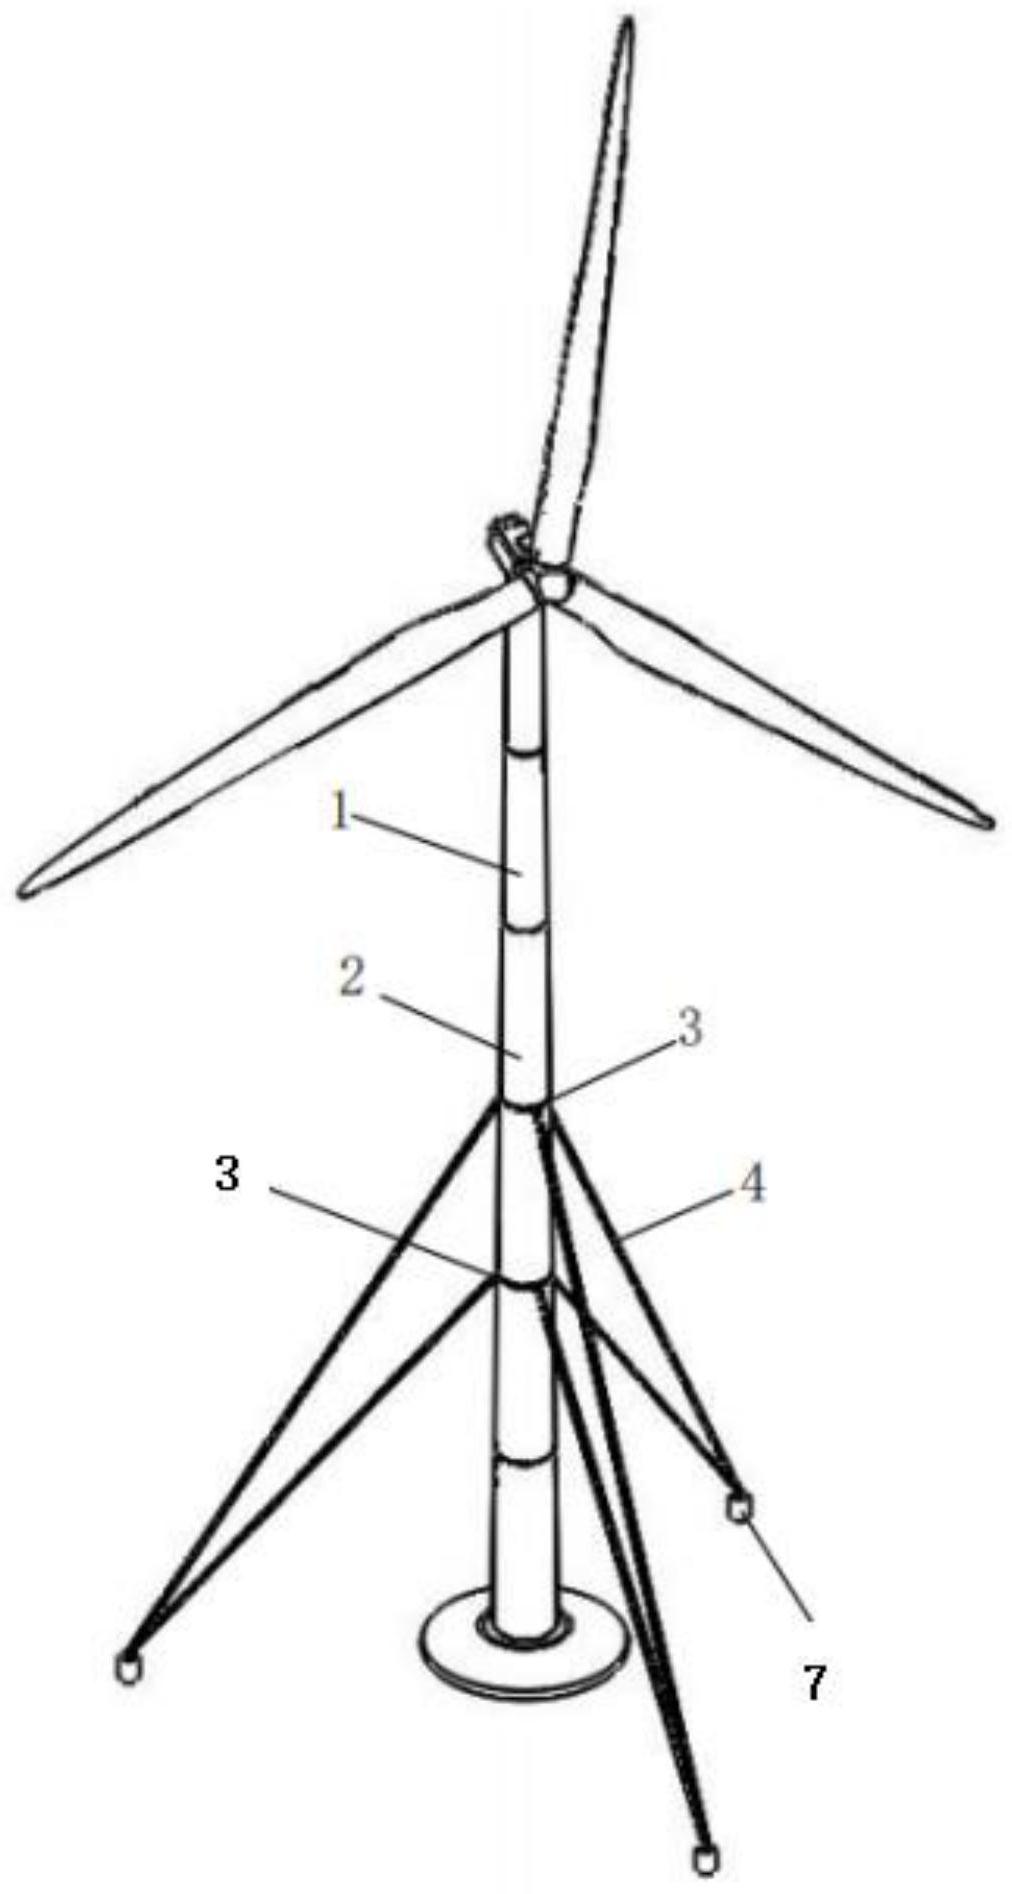 风力发电机组拉索式钢筒塔架及钢筒更换方法